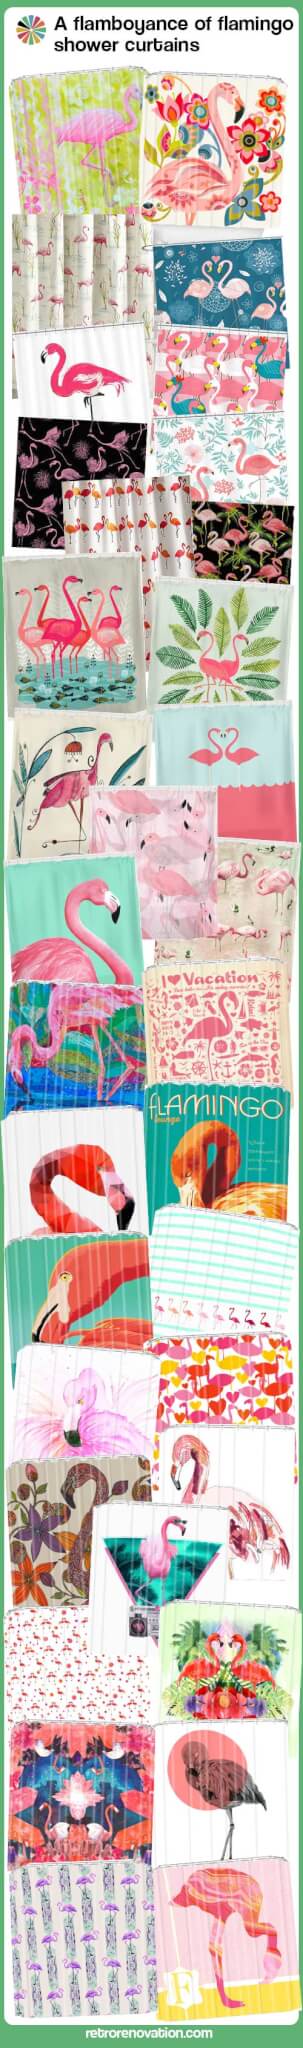 flamingo shower curtains